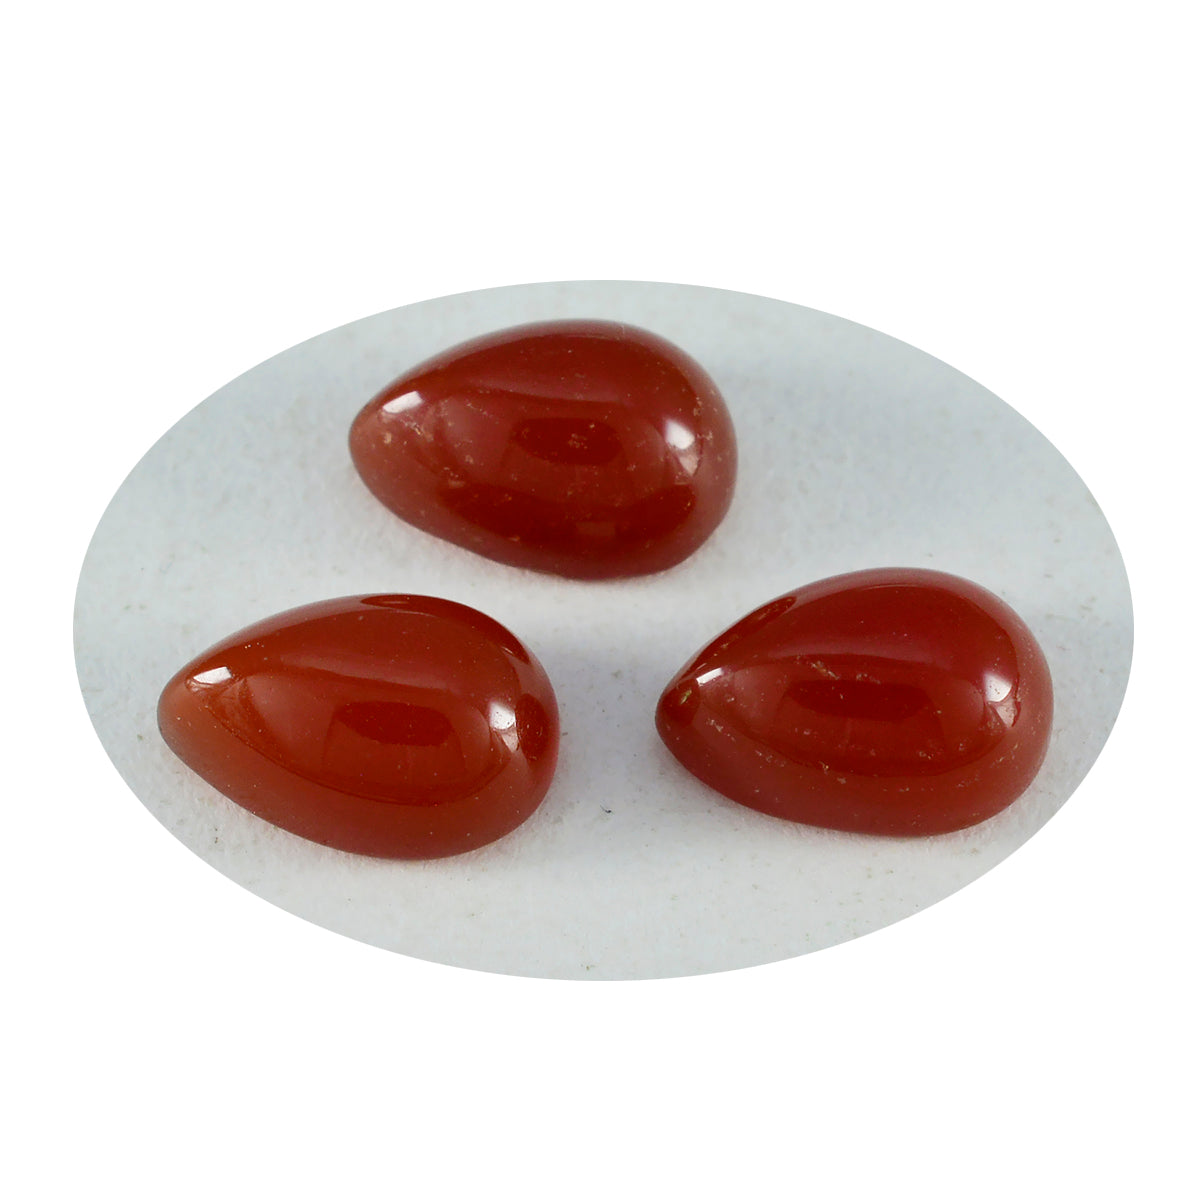 riyogems 1 шт. красный оникс кабошон 10x14 мм грушевидной формы, красивый качественный драгоценный камень